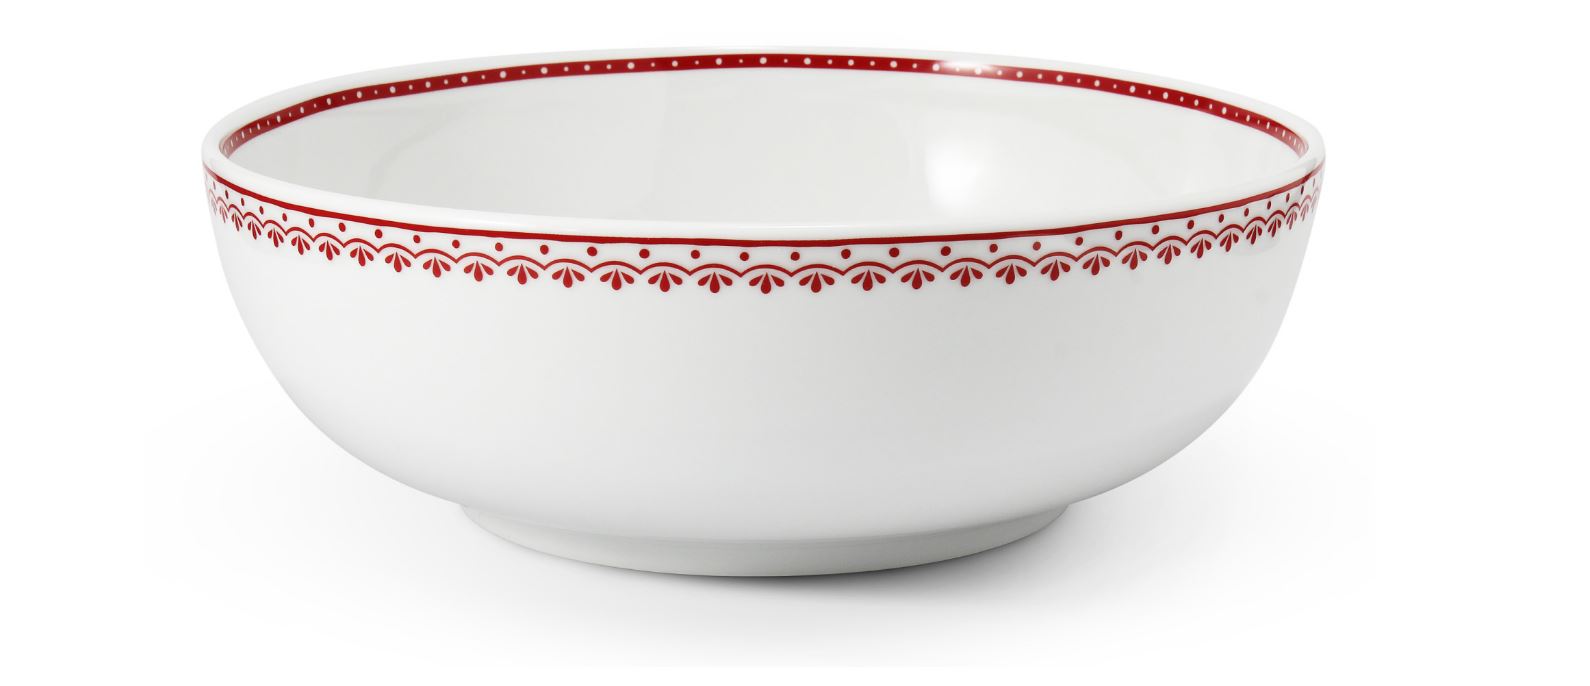 Mísa salátová, 30 cm, český porcelán, Hyggeline, červená, Leander